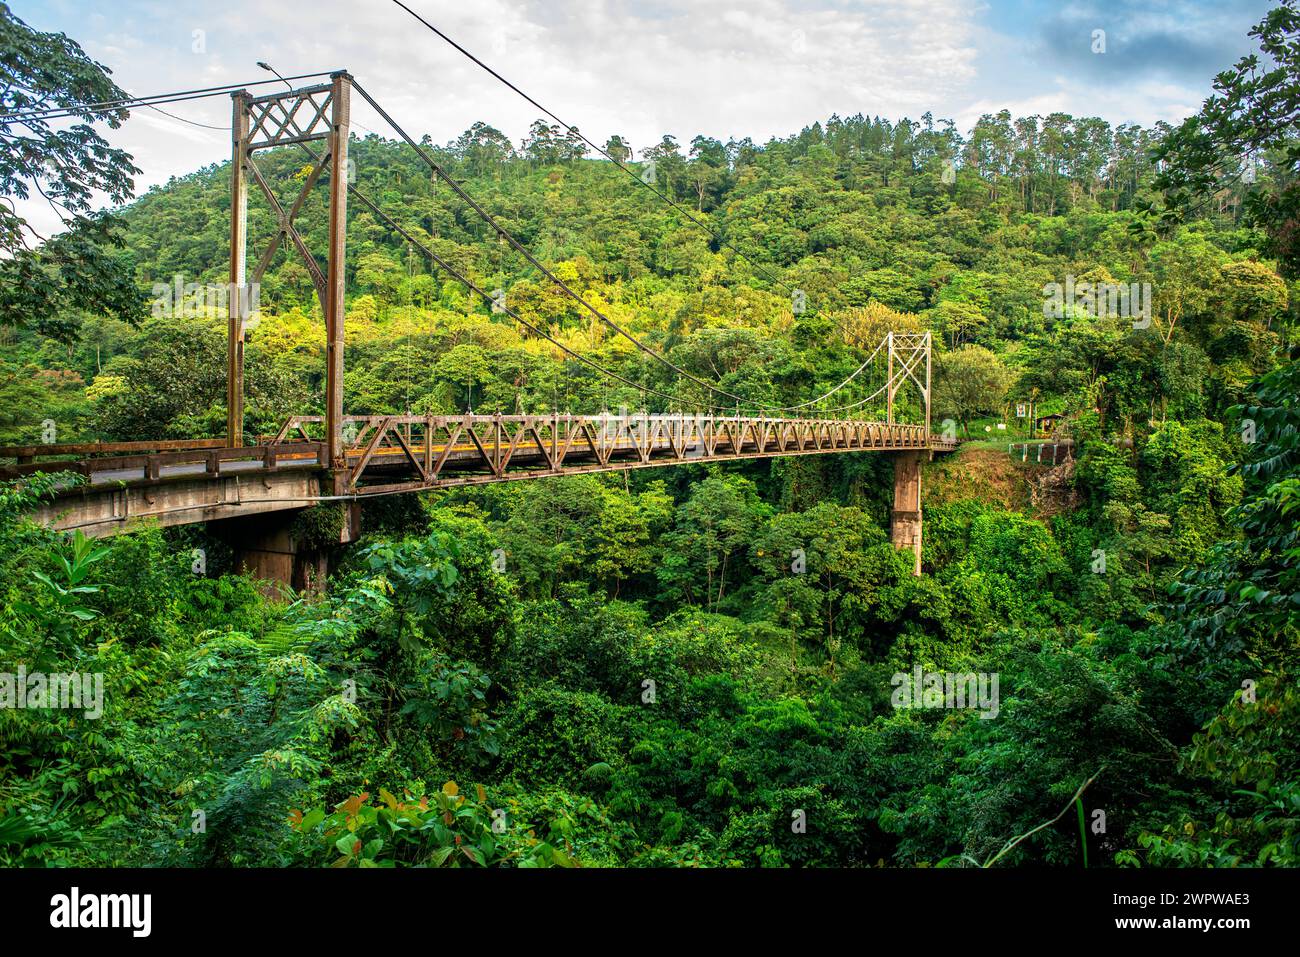 San Isidro de Peñas Blancas suspension bridge over crosses the Penas Blancas River in central Costa Rica. Bridge between La Fortuna and San Ramon in d Stock Photo